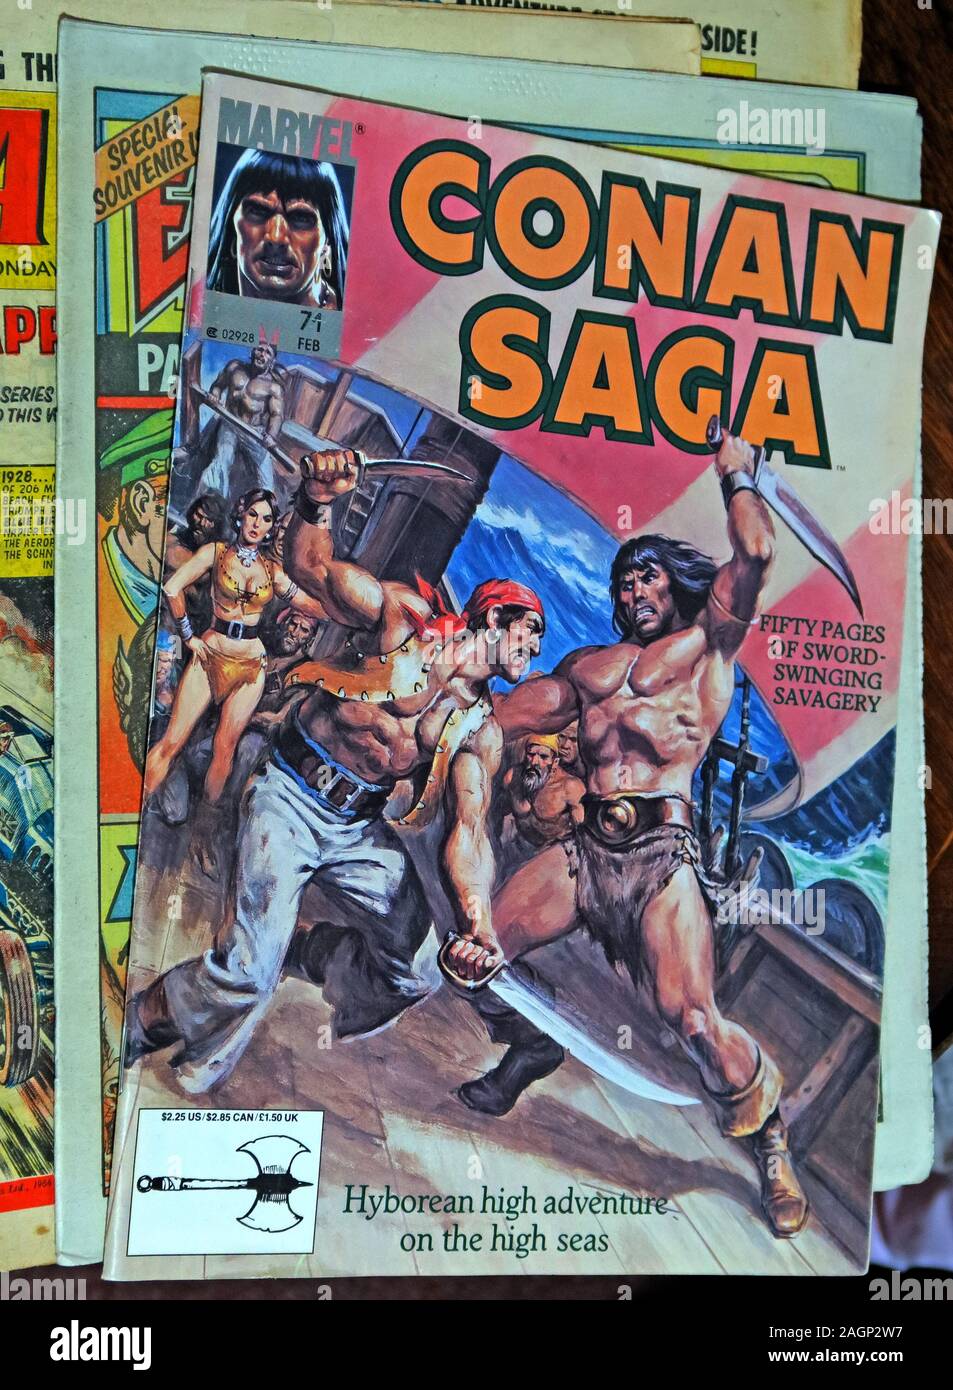 Marvell's Conan Saga Comic, Hyborean High Adventure in alto mare, cinquanta pagine di spada oscillante savagery Foto Stock